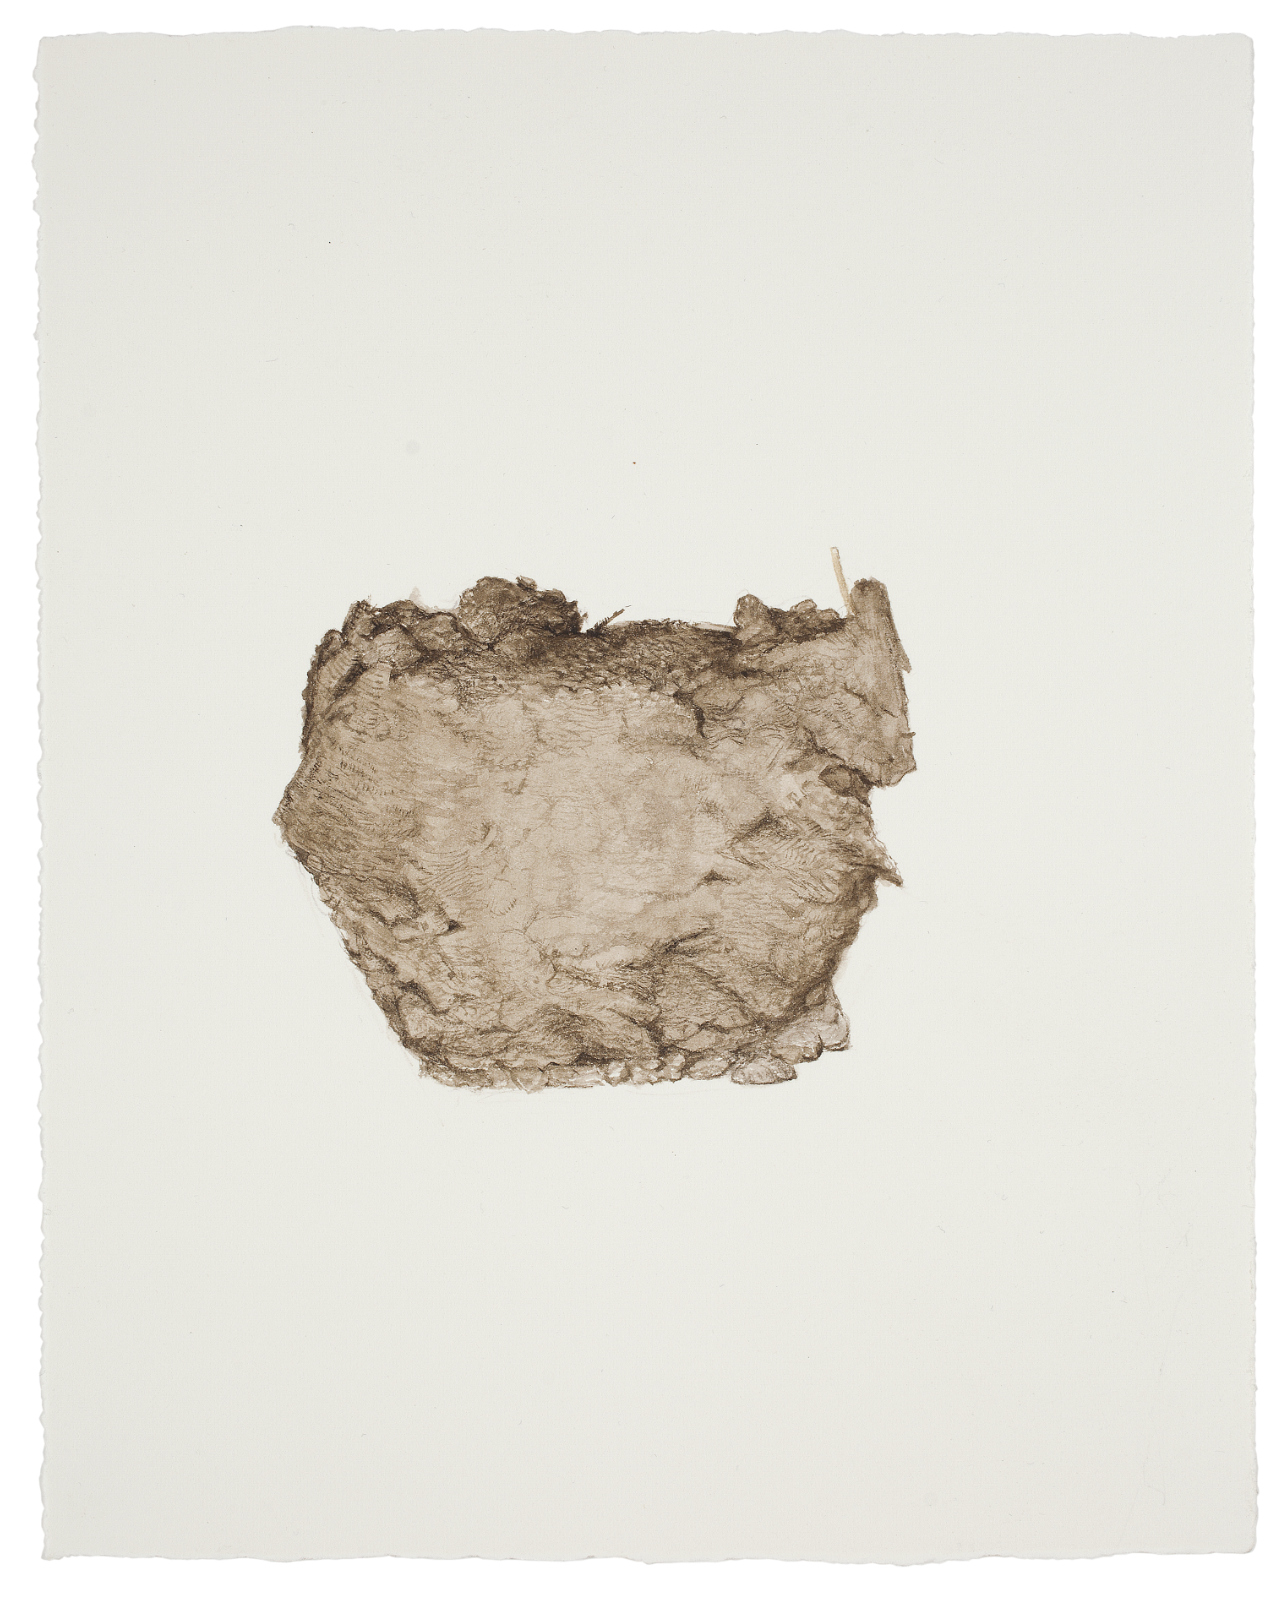 Thorbjørn Sørensen, "From nature", 2013, water color on paper,  25 x 20 cm.